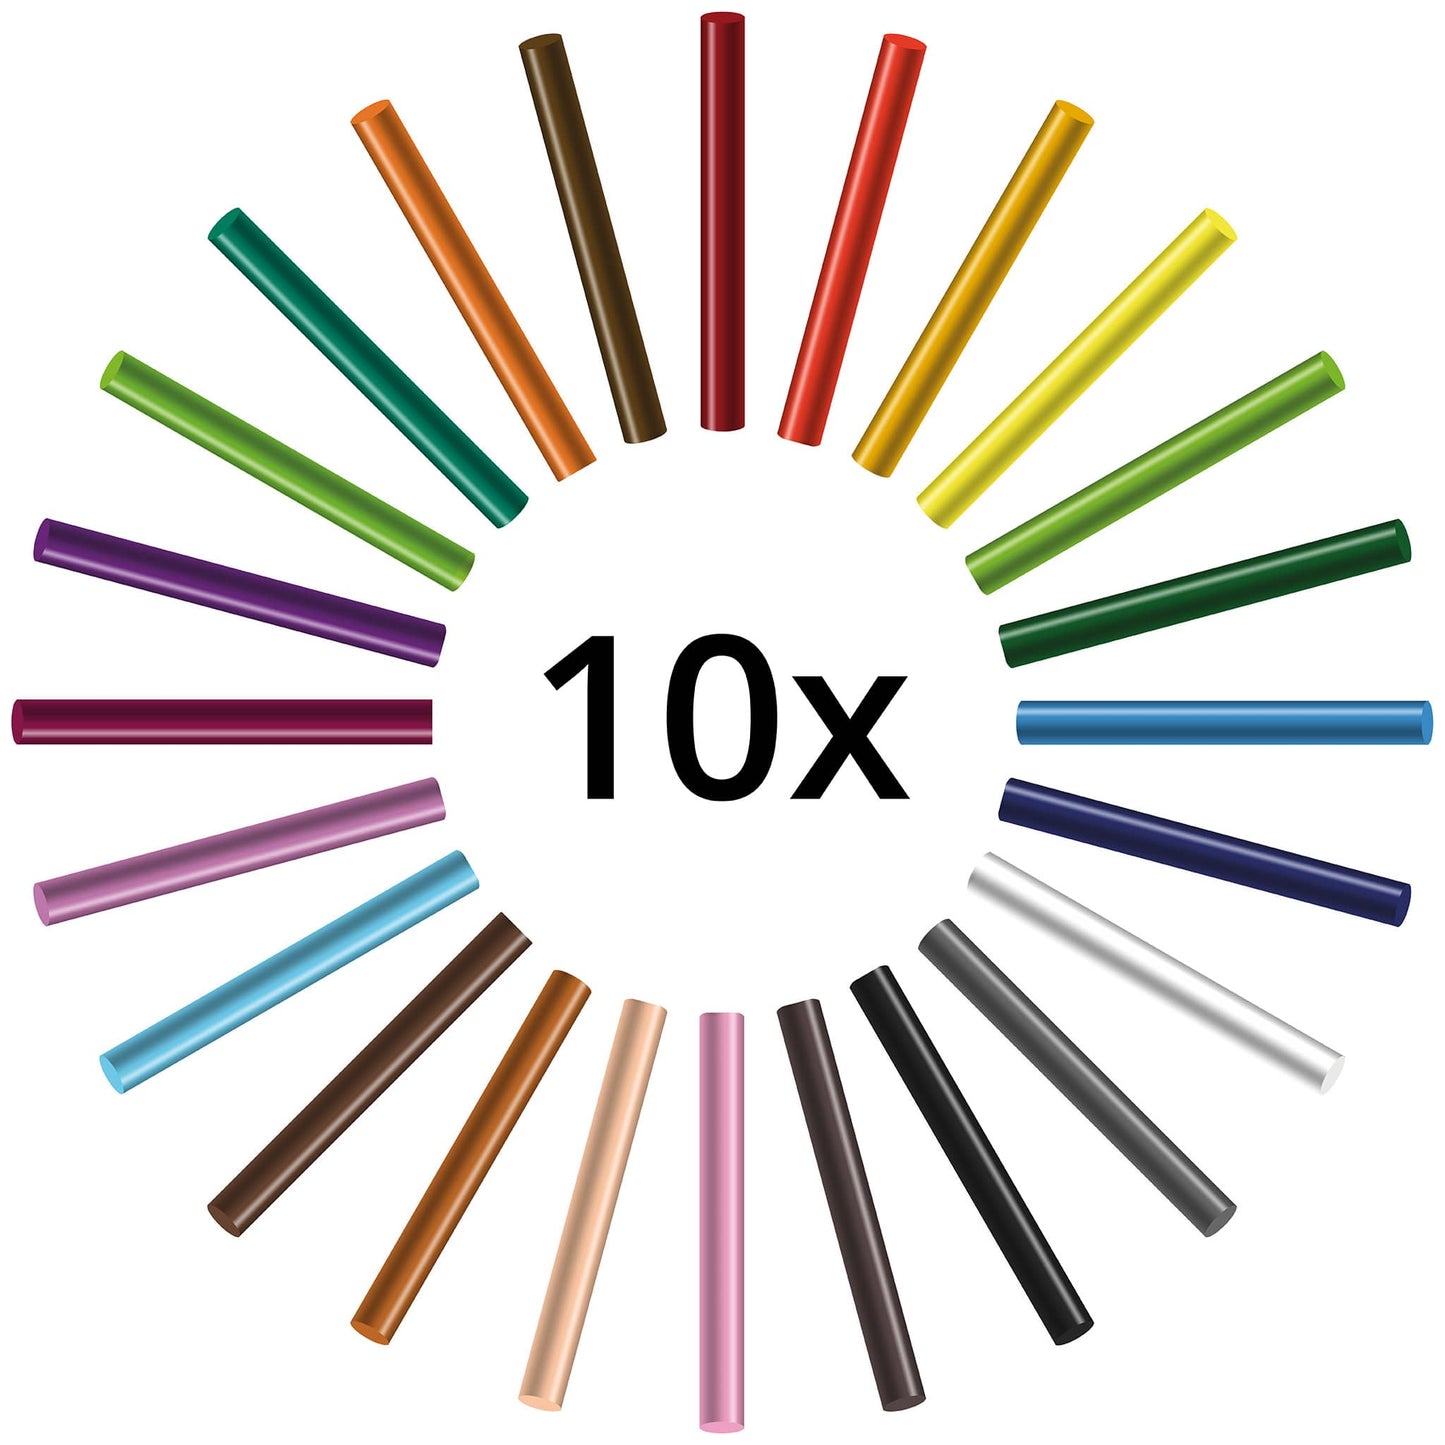 Seccorell - Nachfüllung Großmenge Einzelne Seccorell Farbstäbchen nach Wahl in 10er Gebinde erhältlich.